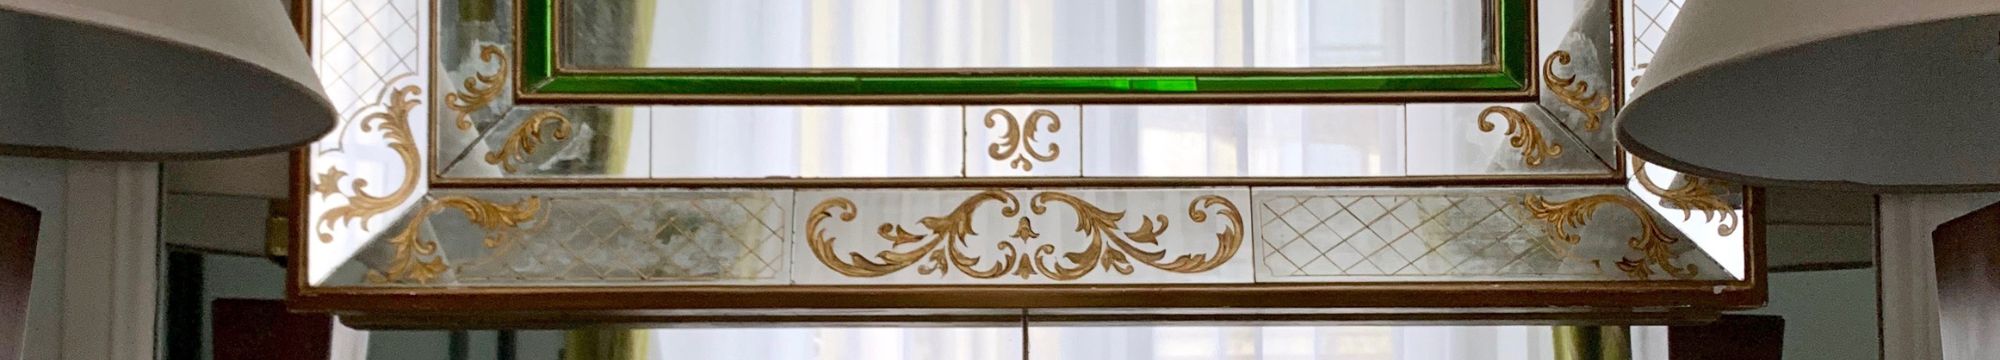 miroir-a-parcloses-ancien-periode-vintage-antiquaire-decoration-interieure